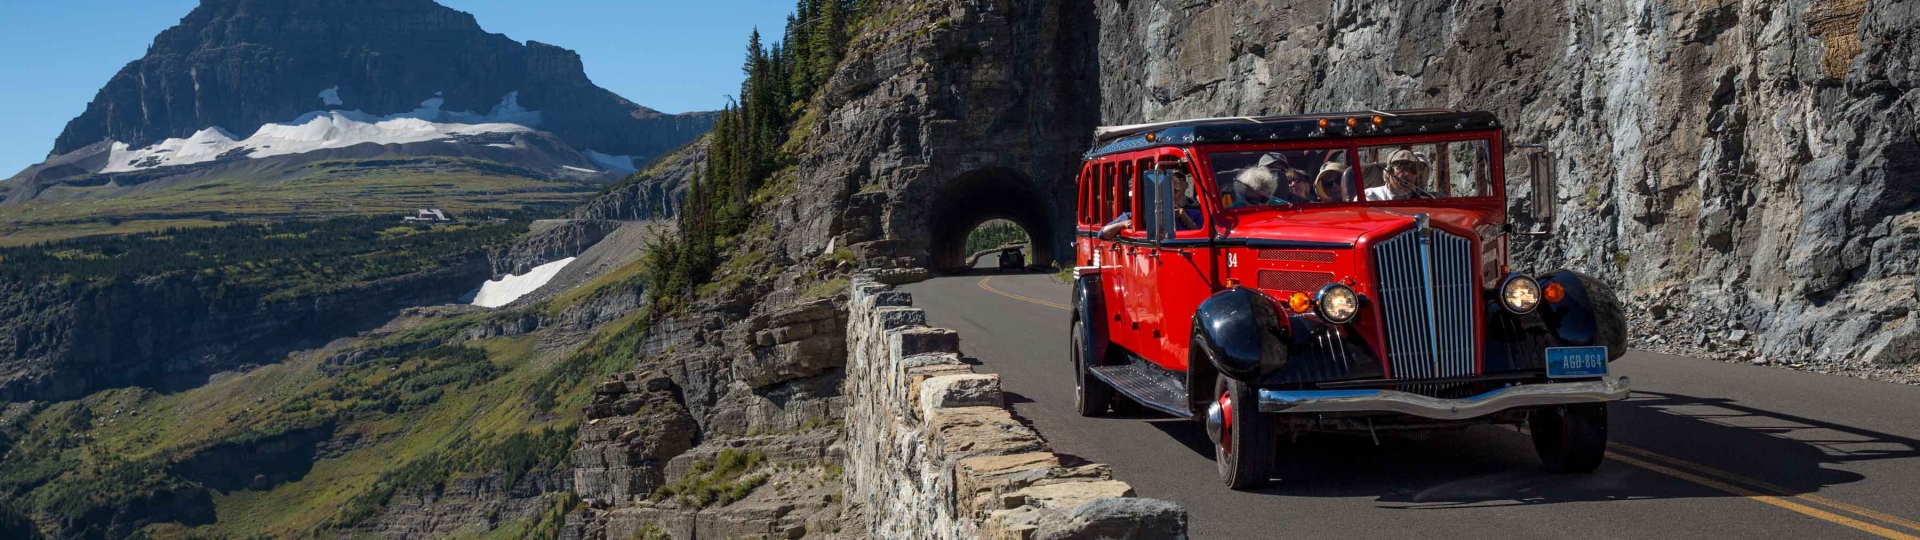 Glacier National Park Red Bus Tours